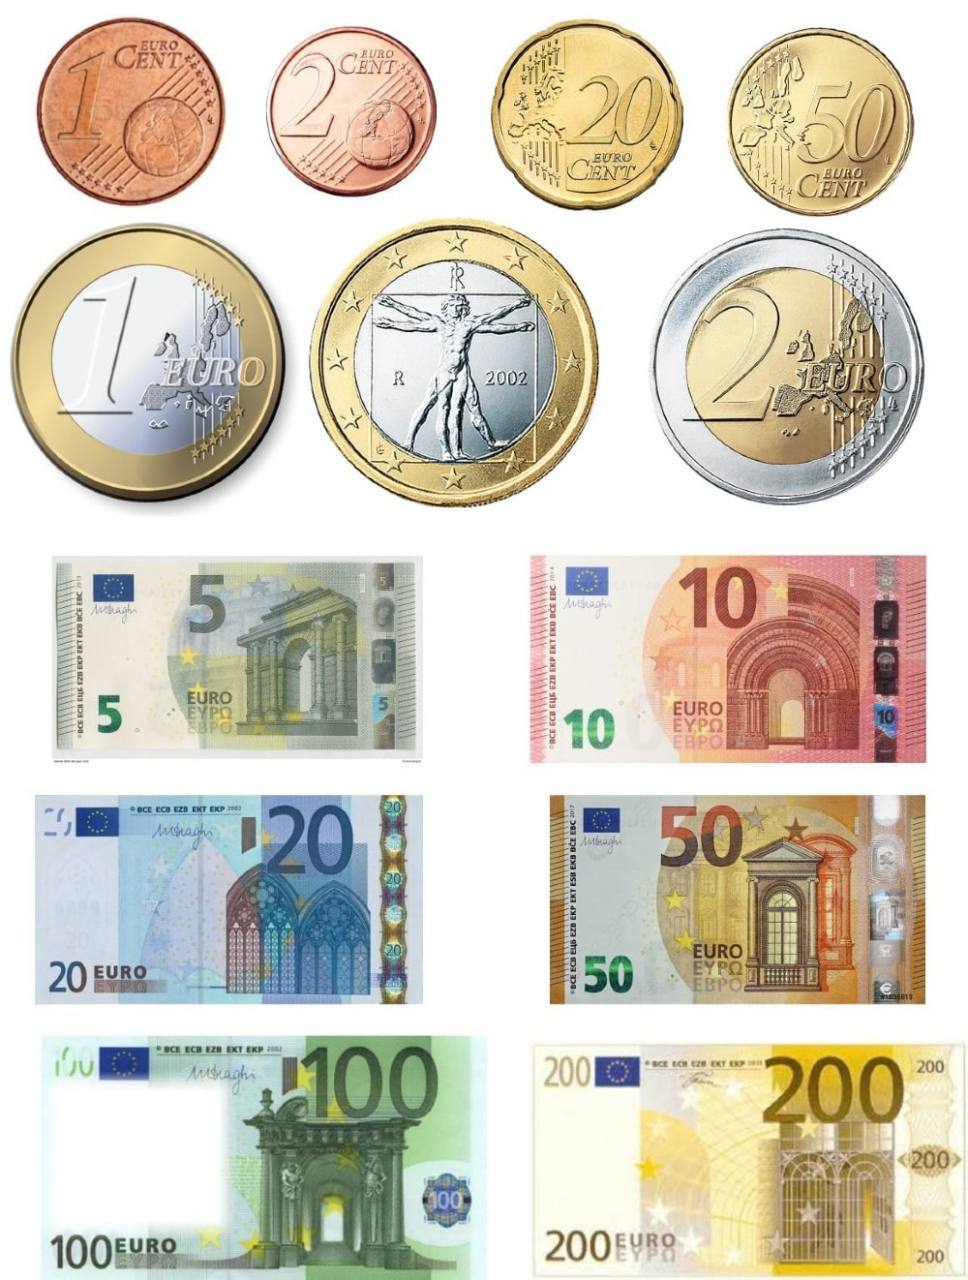 Euro e Lira, le celebrazioni ufficiali delle monete con Mara Venier a Roma